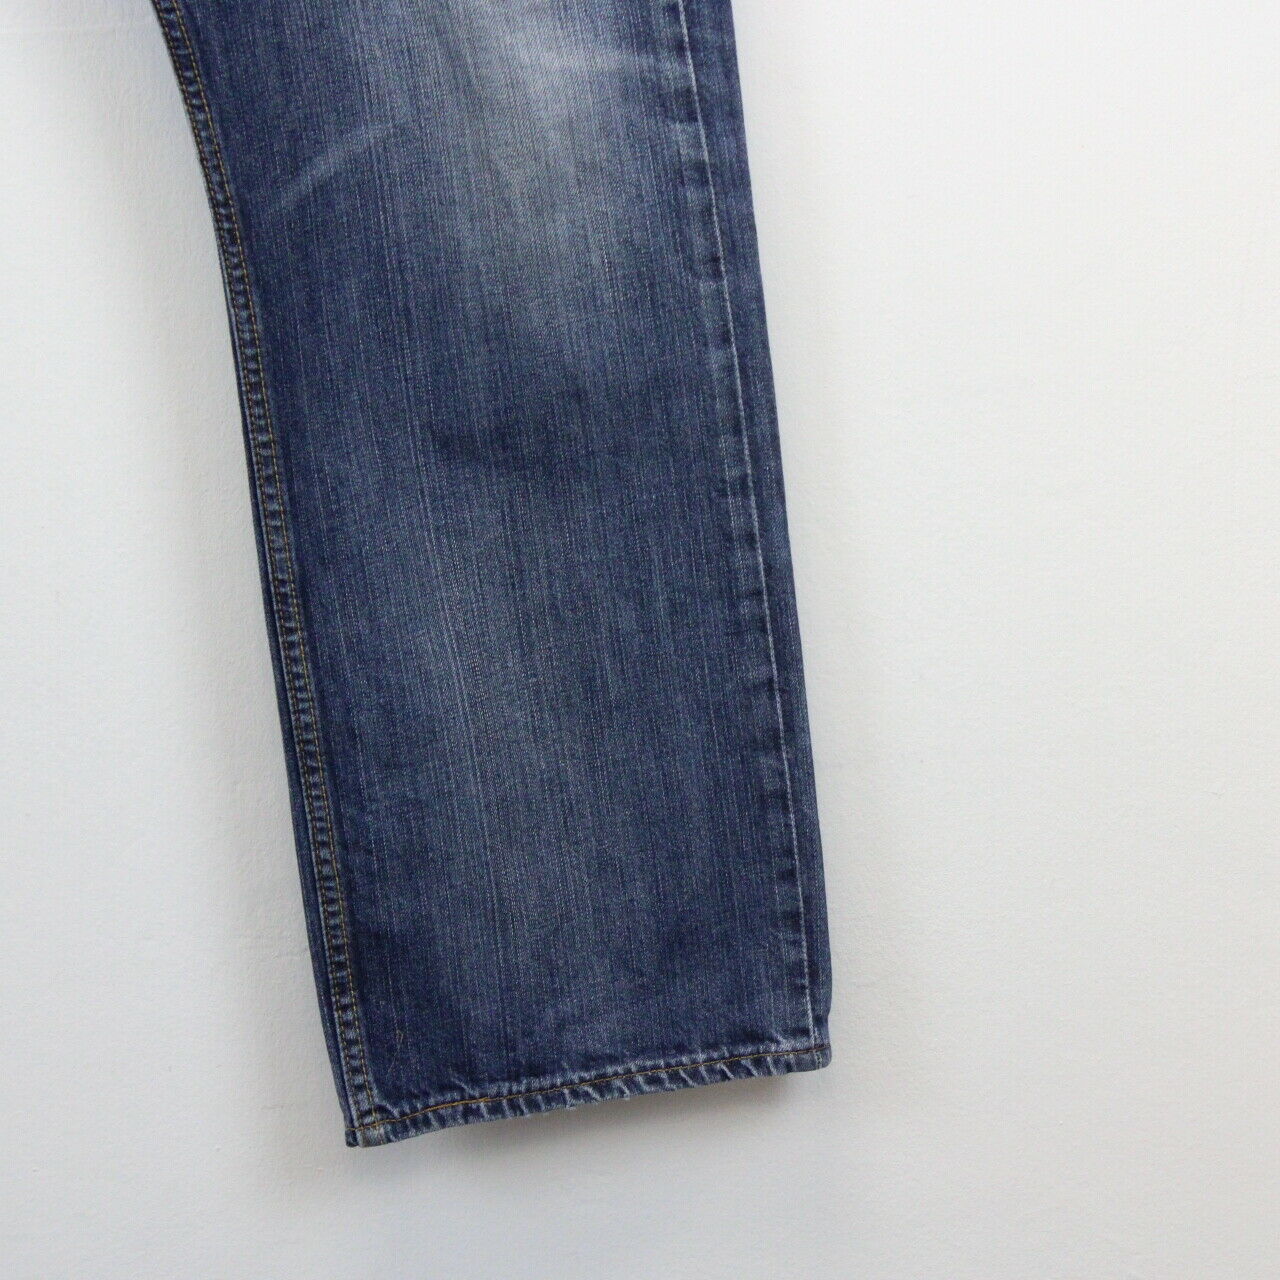 LEVIS 501 Jeans Blue |  W36 L32